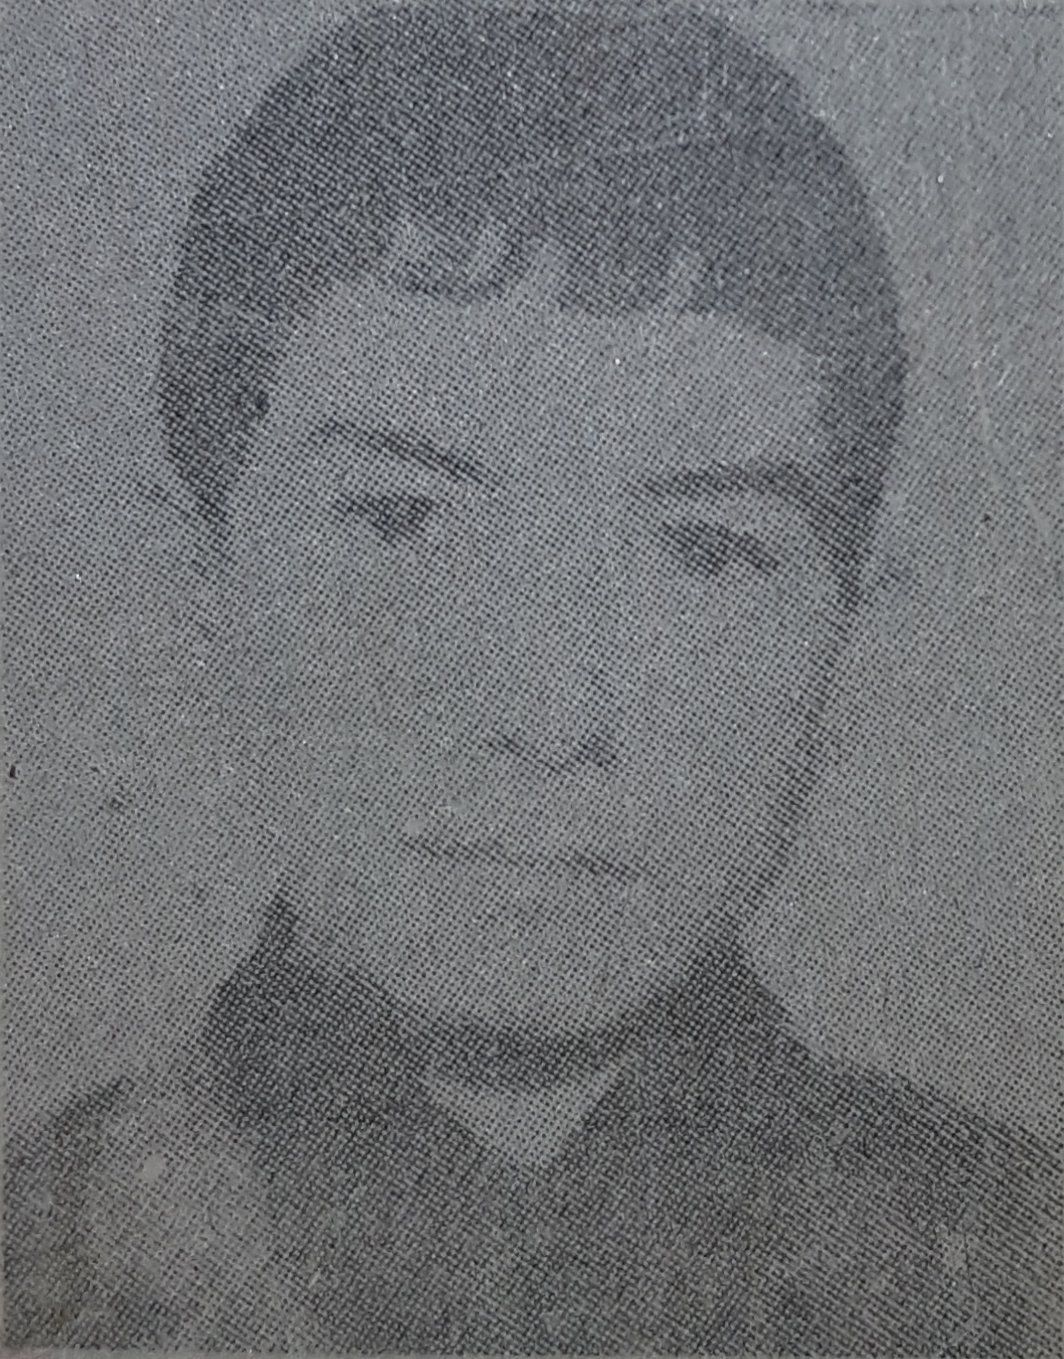 Ali Sağcan